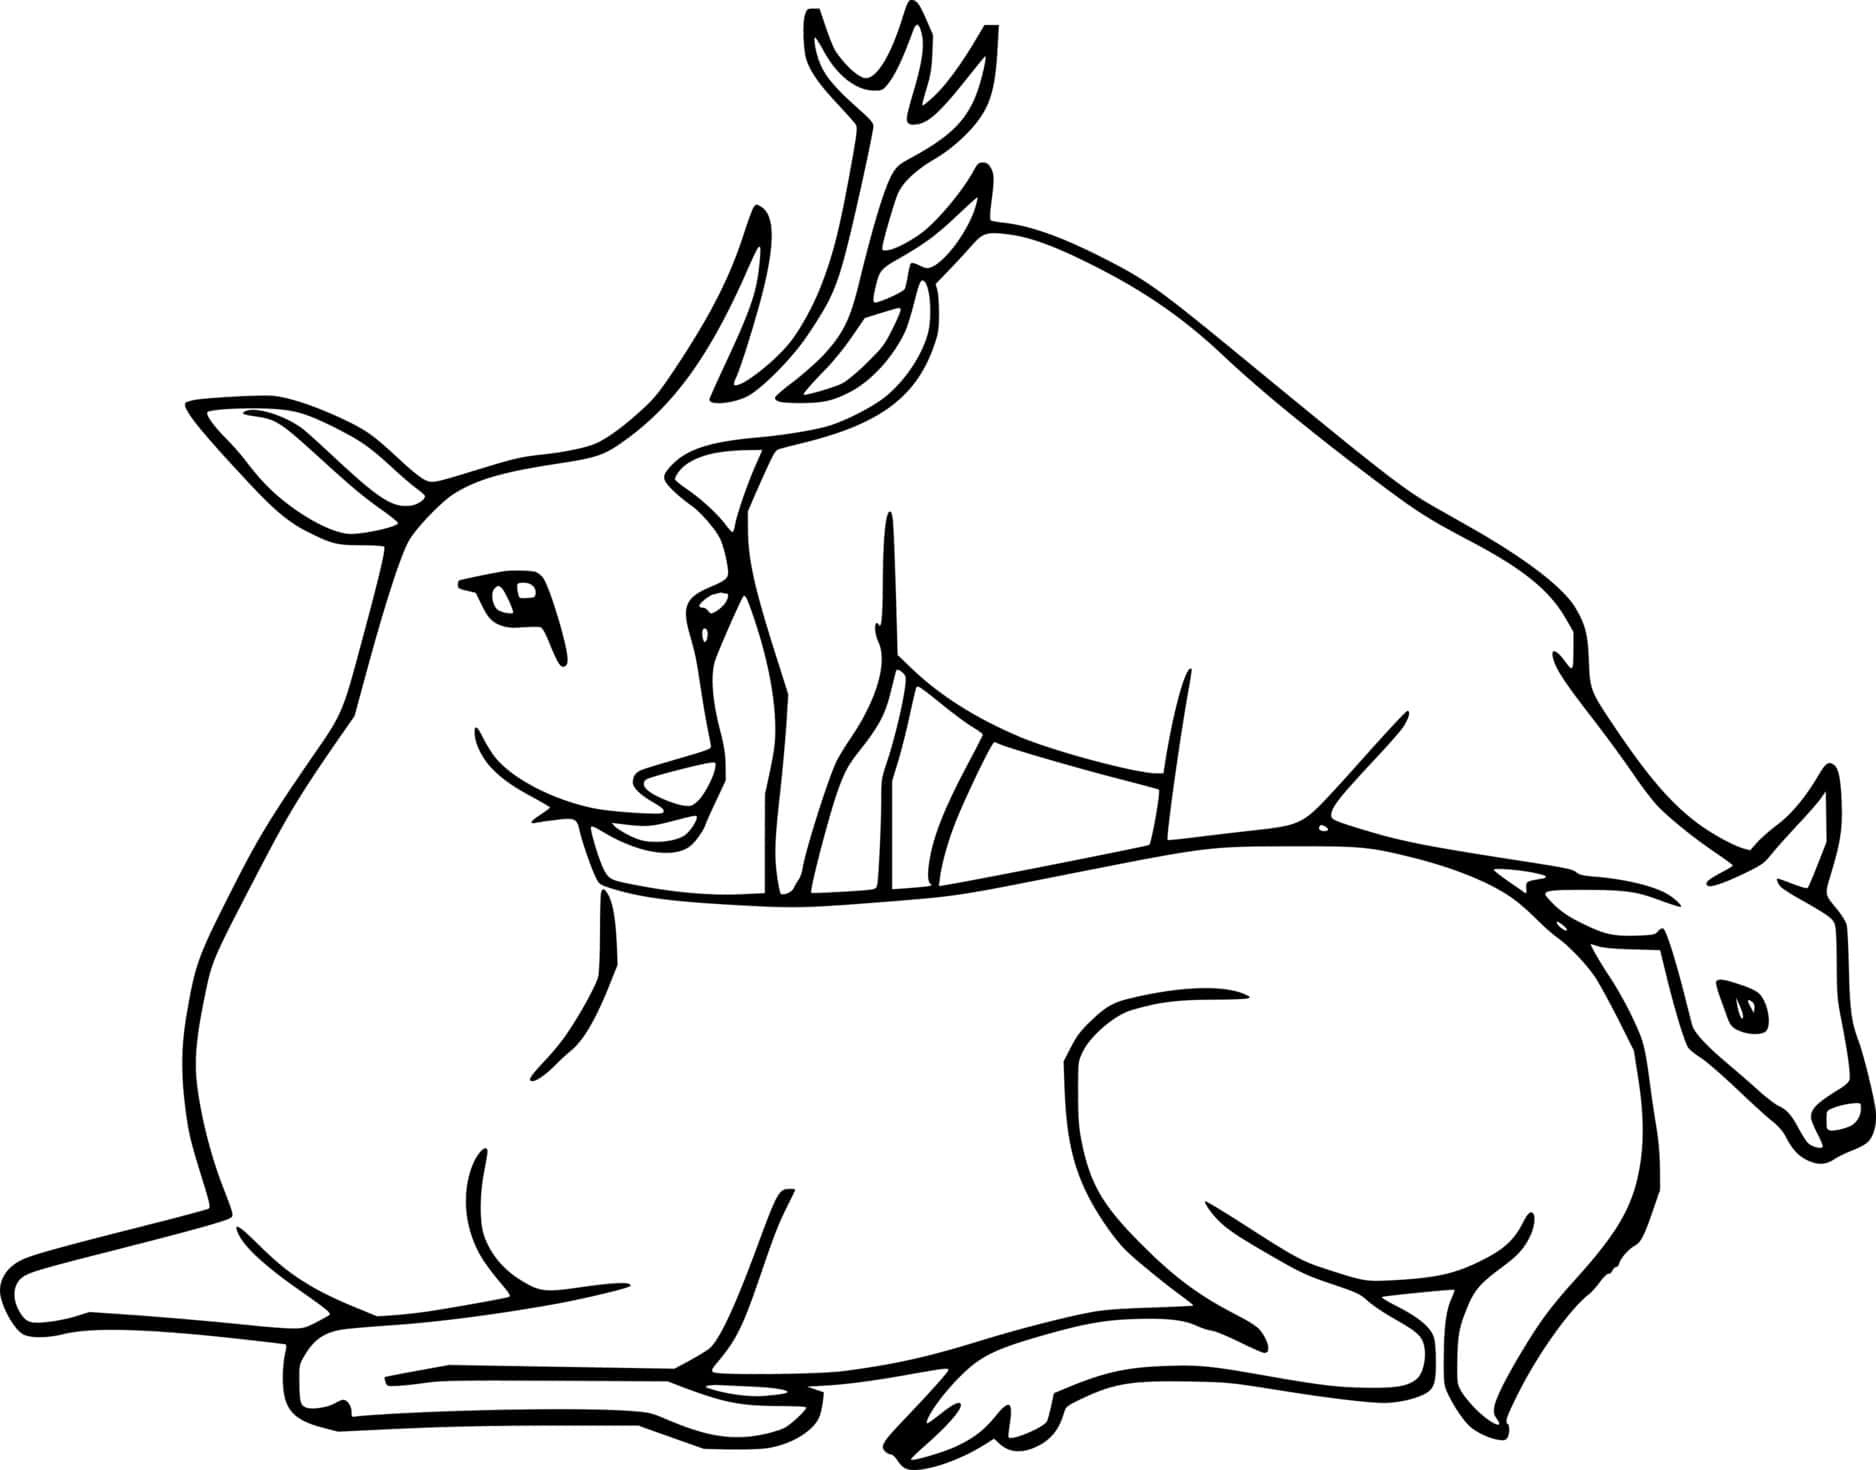 Two Simple Deer